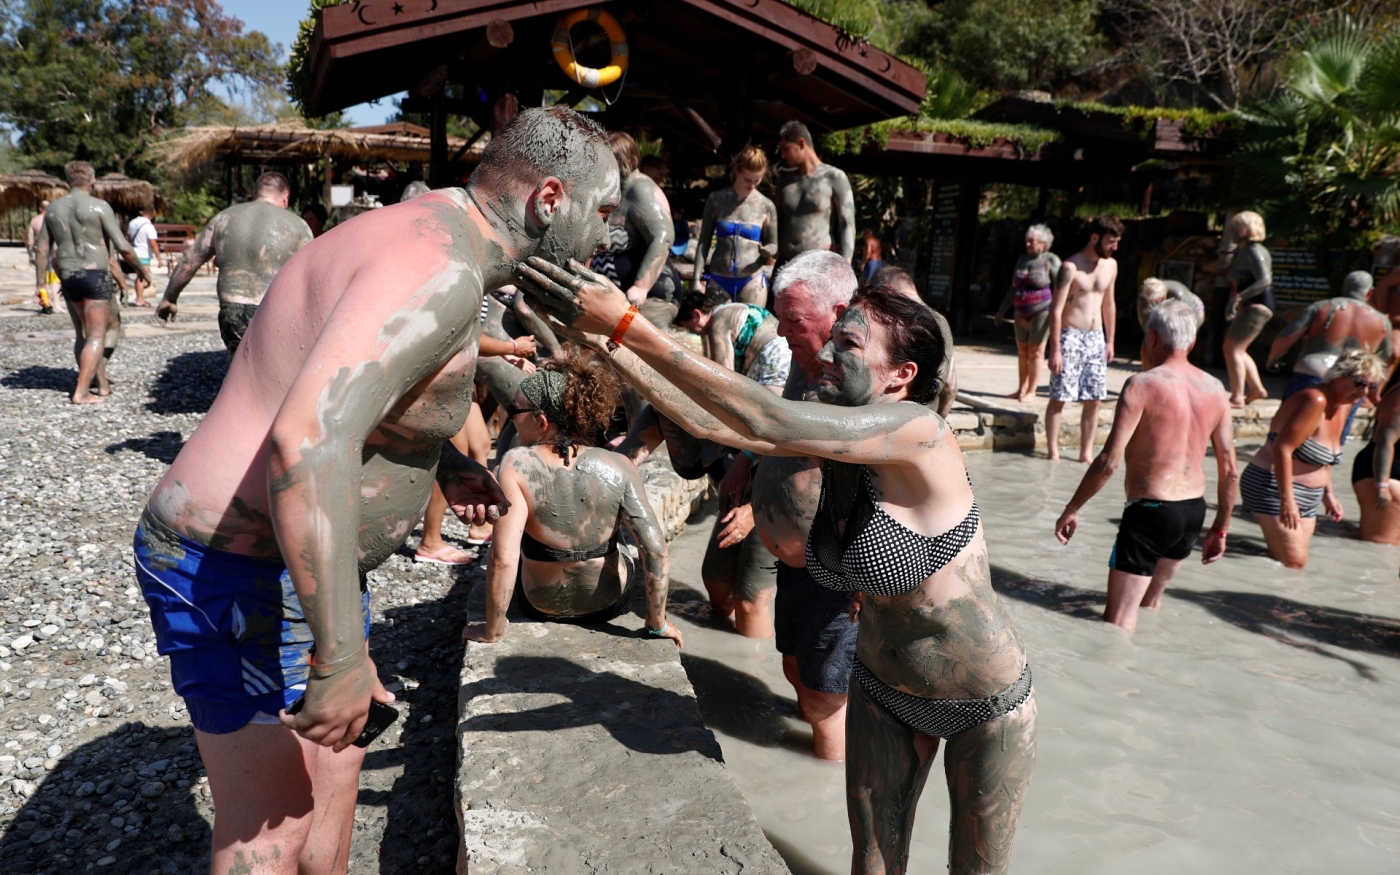 Les touristes russes prennent des bains de boue dans la station balnéaire méditerranéenne de Dalyan, dans la province de Muğla, en Turquie (Reuters)